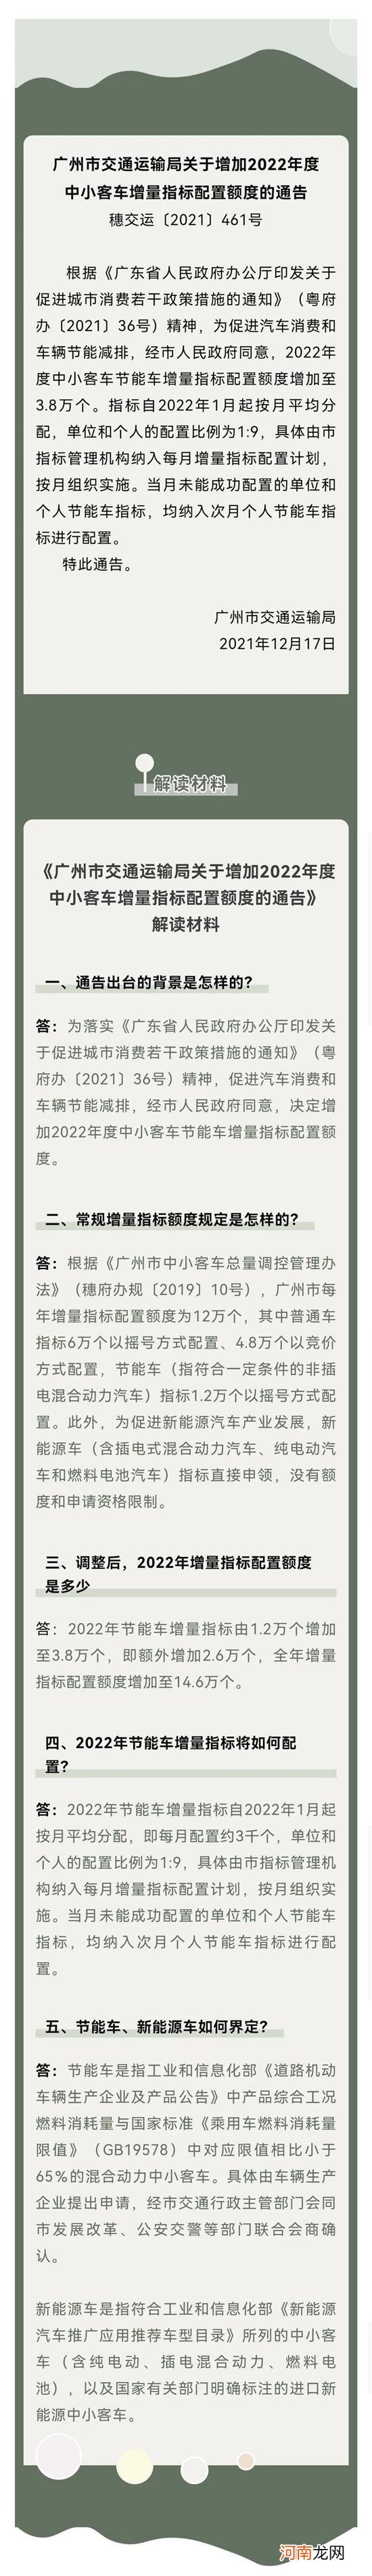 广州2022年节能车增量指标再次上调